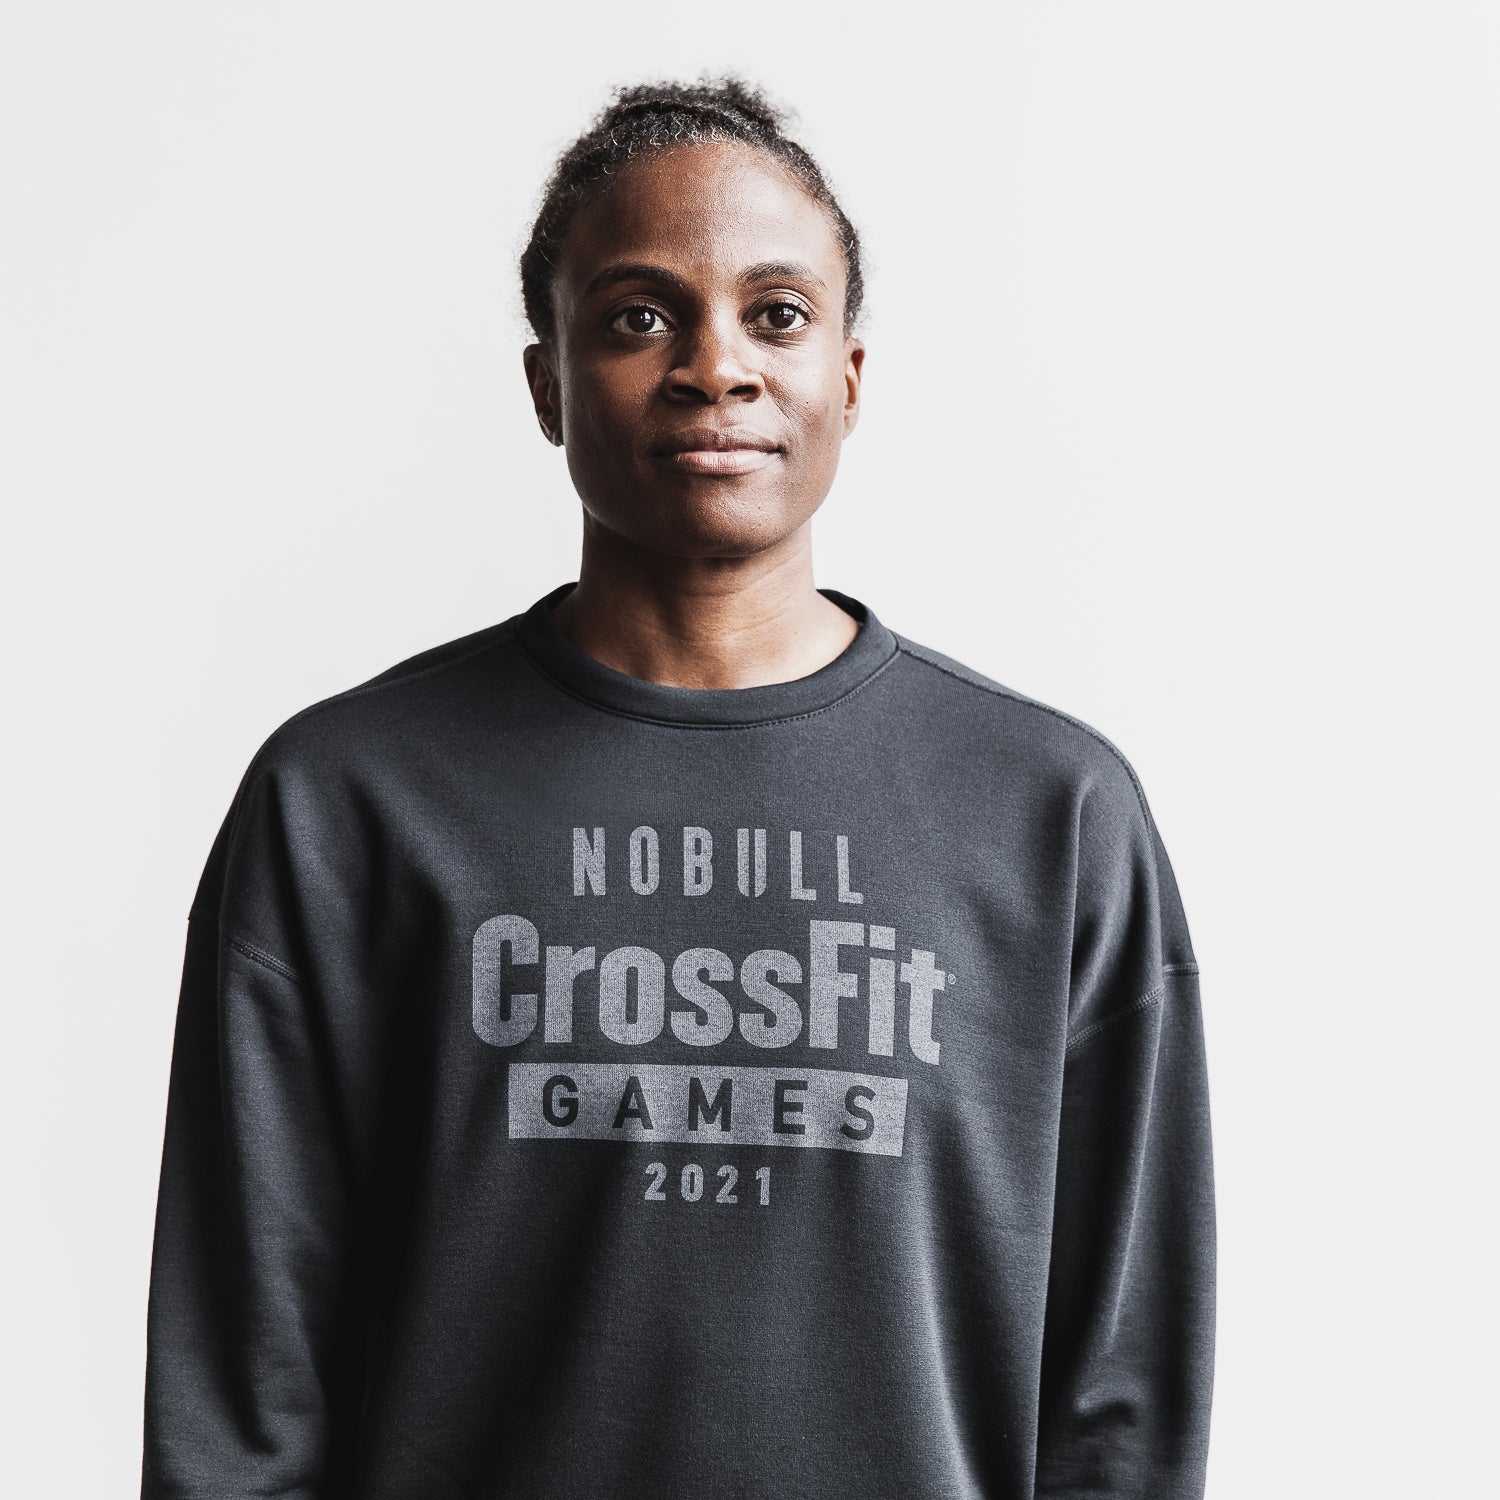 Scoring at the 2021 NOBULL CrossFit Games